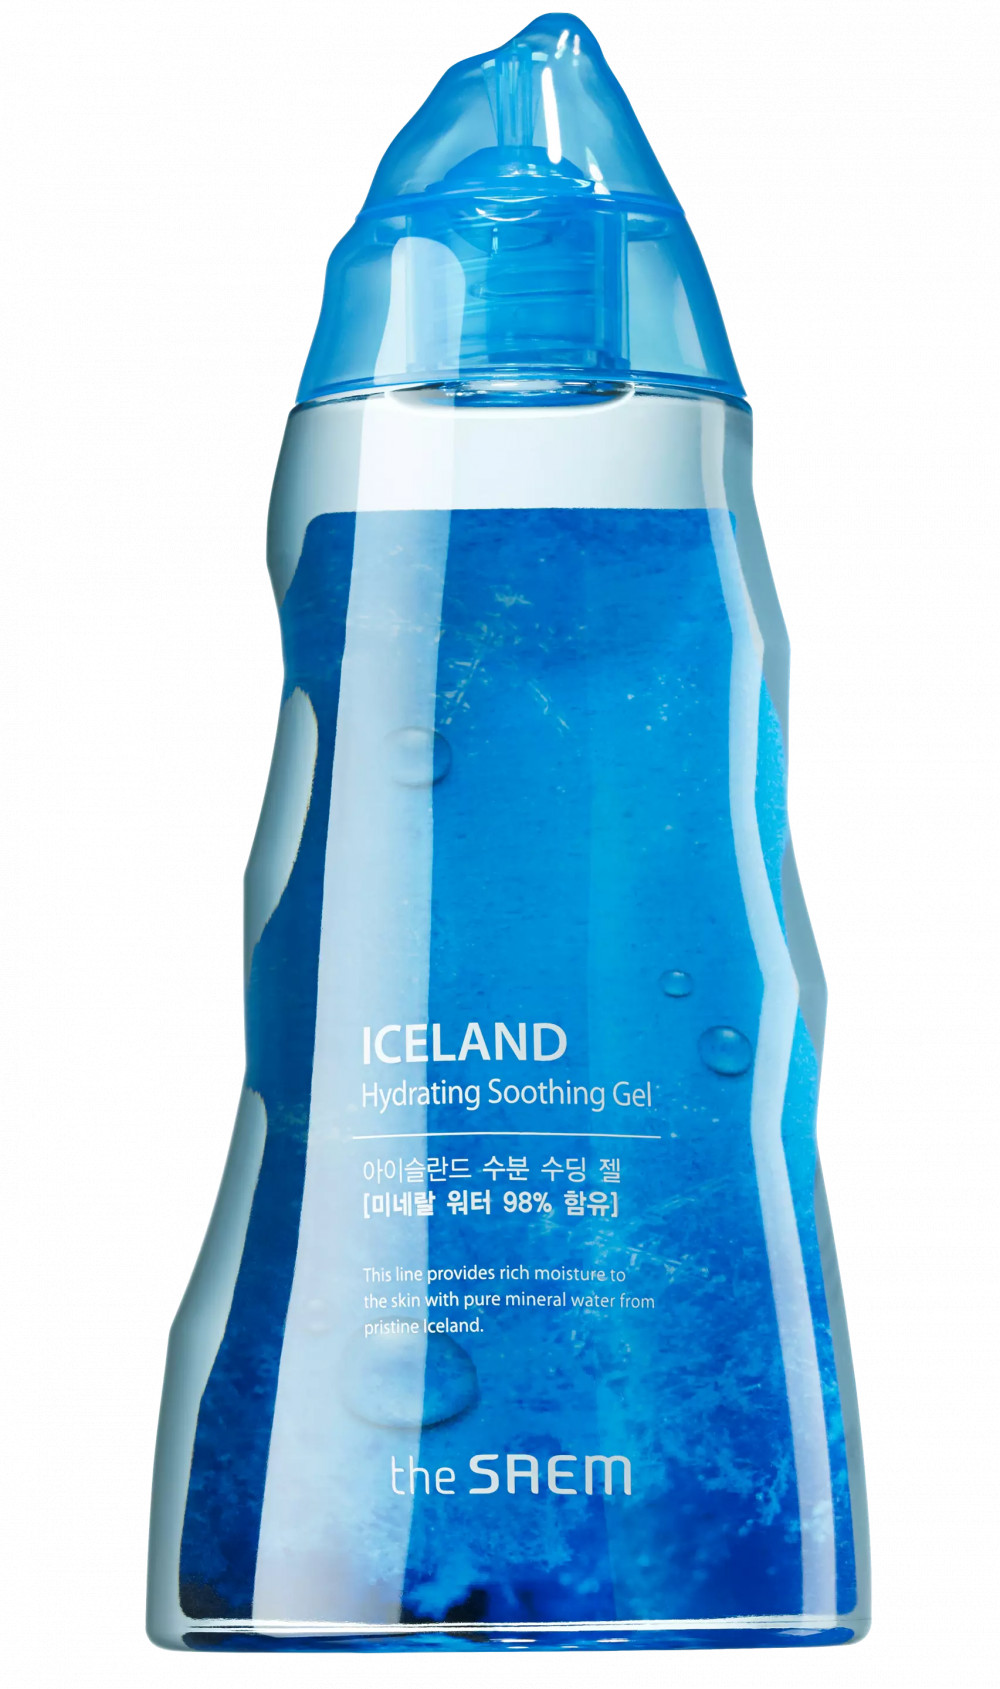 THE SAEM Iceland hidratáló, bőrnyugtató gél 98% kristálytiszta izlandi gleccservízzel 300 ml